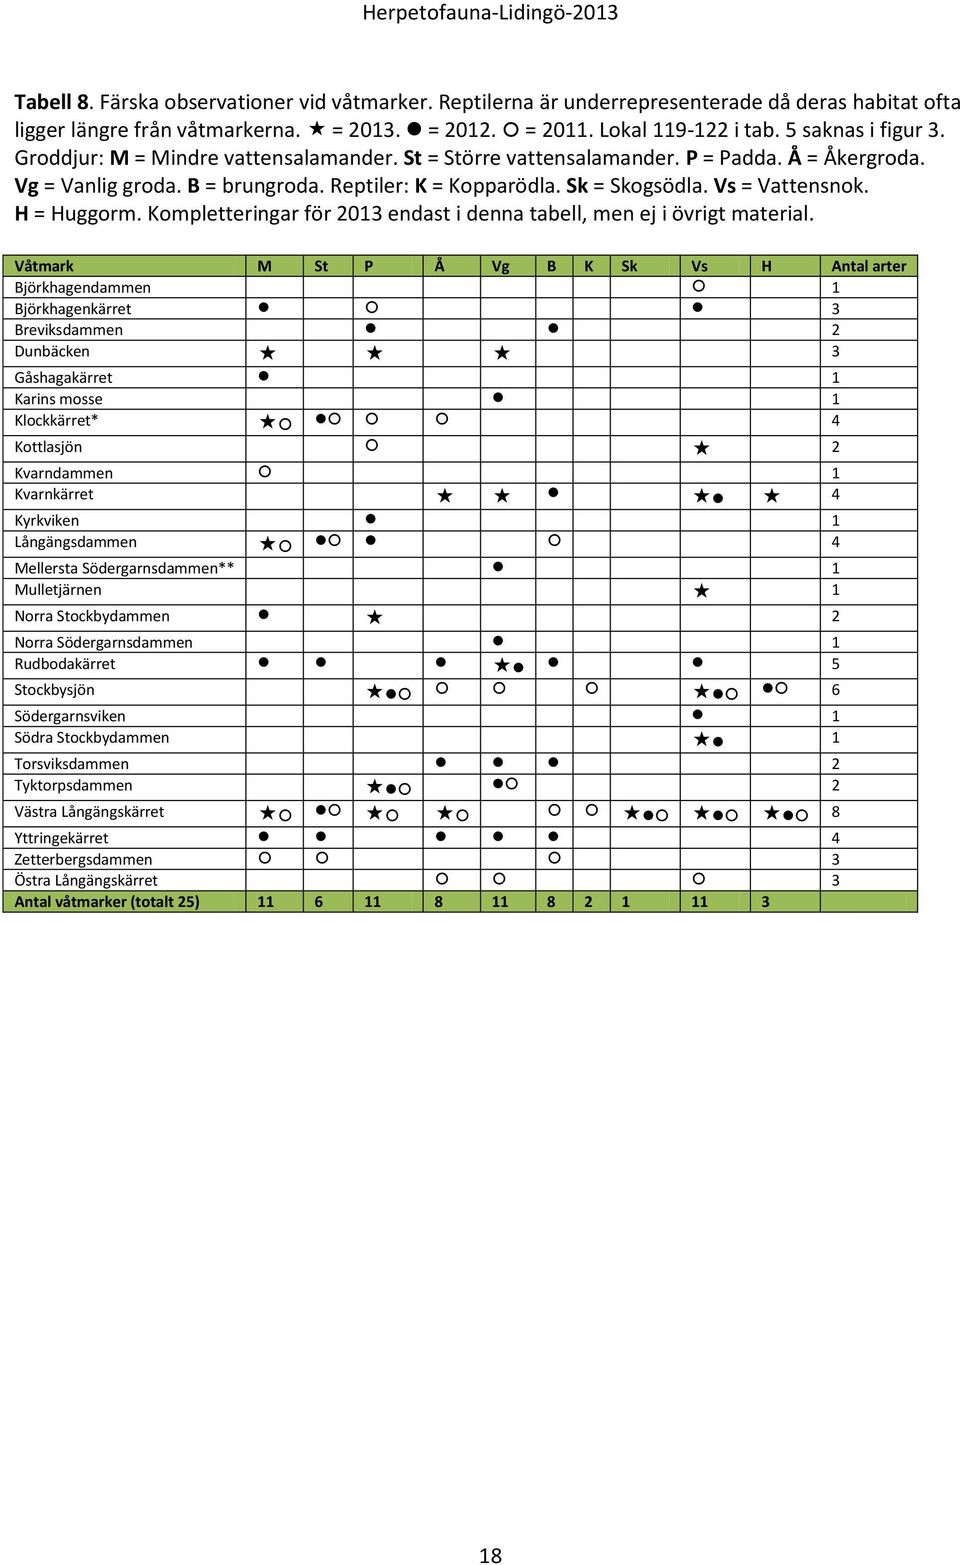 Kompletteringar för 2013 endast i denna tabell, men ej i övrigt material.